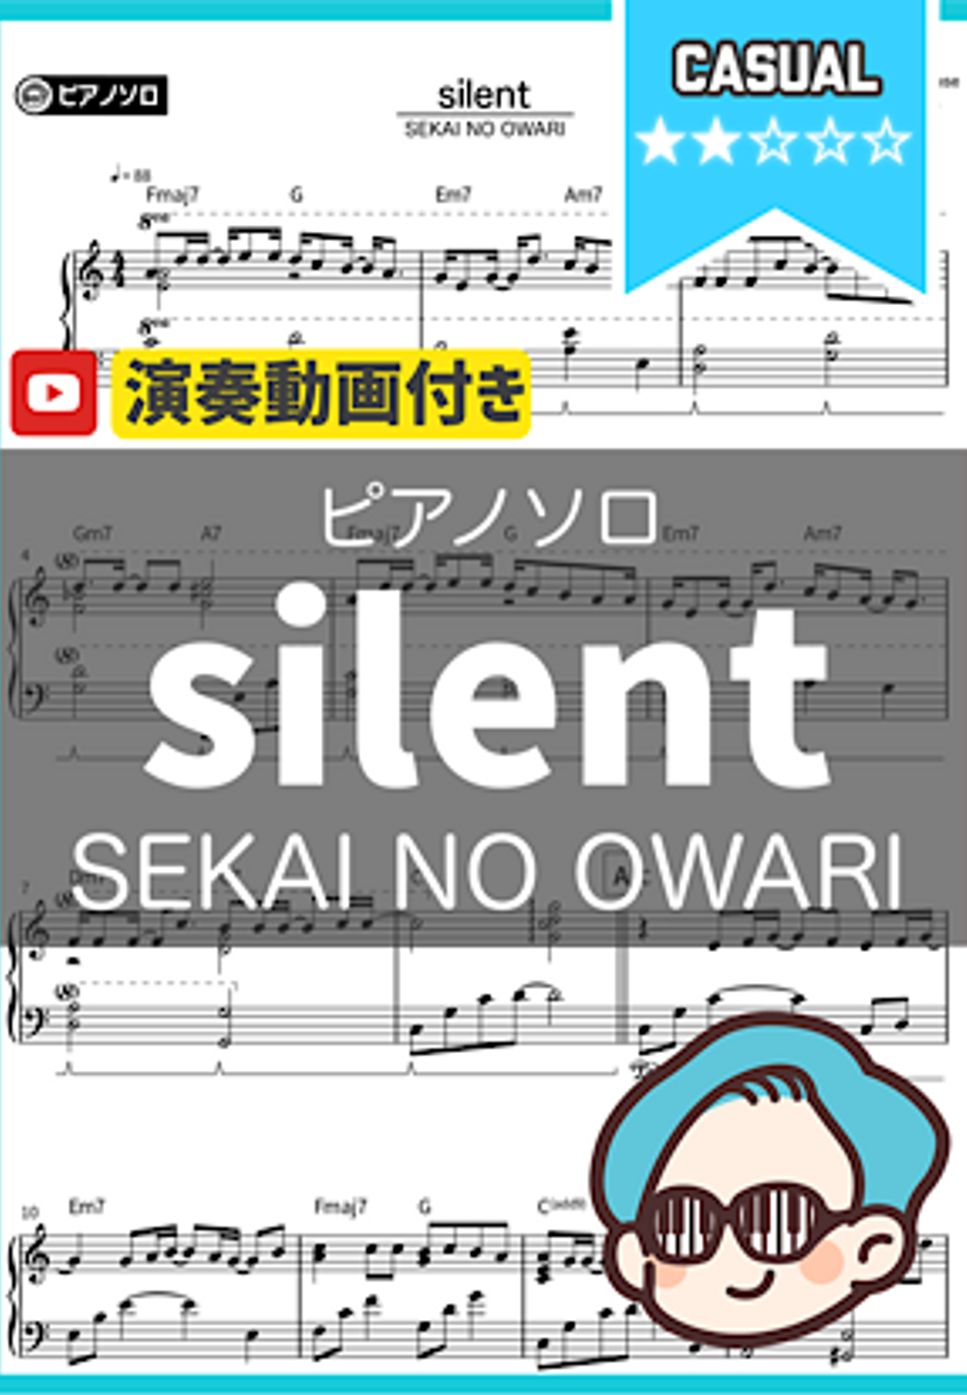 SEKAI NO OWARI - silent by THETA